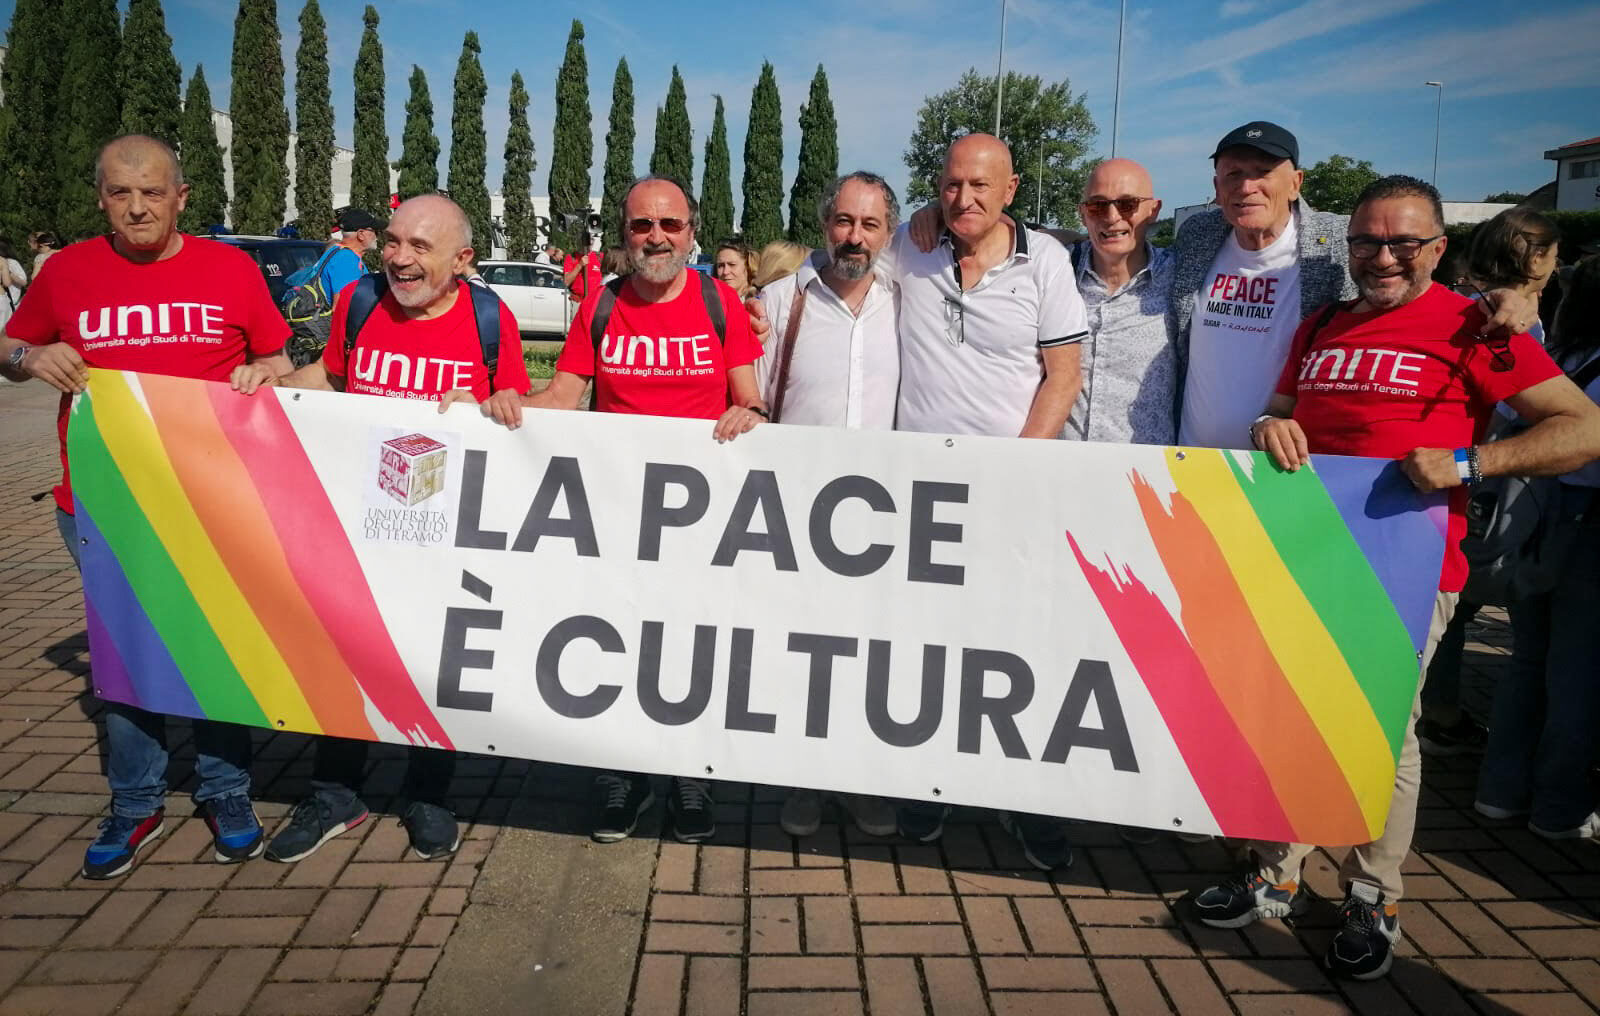 FOTO | Arezzo-Rondine: l’Unite prima a siglare una convenzione con la Cittadella della Pace